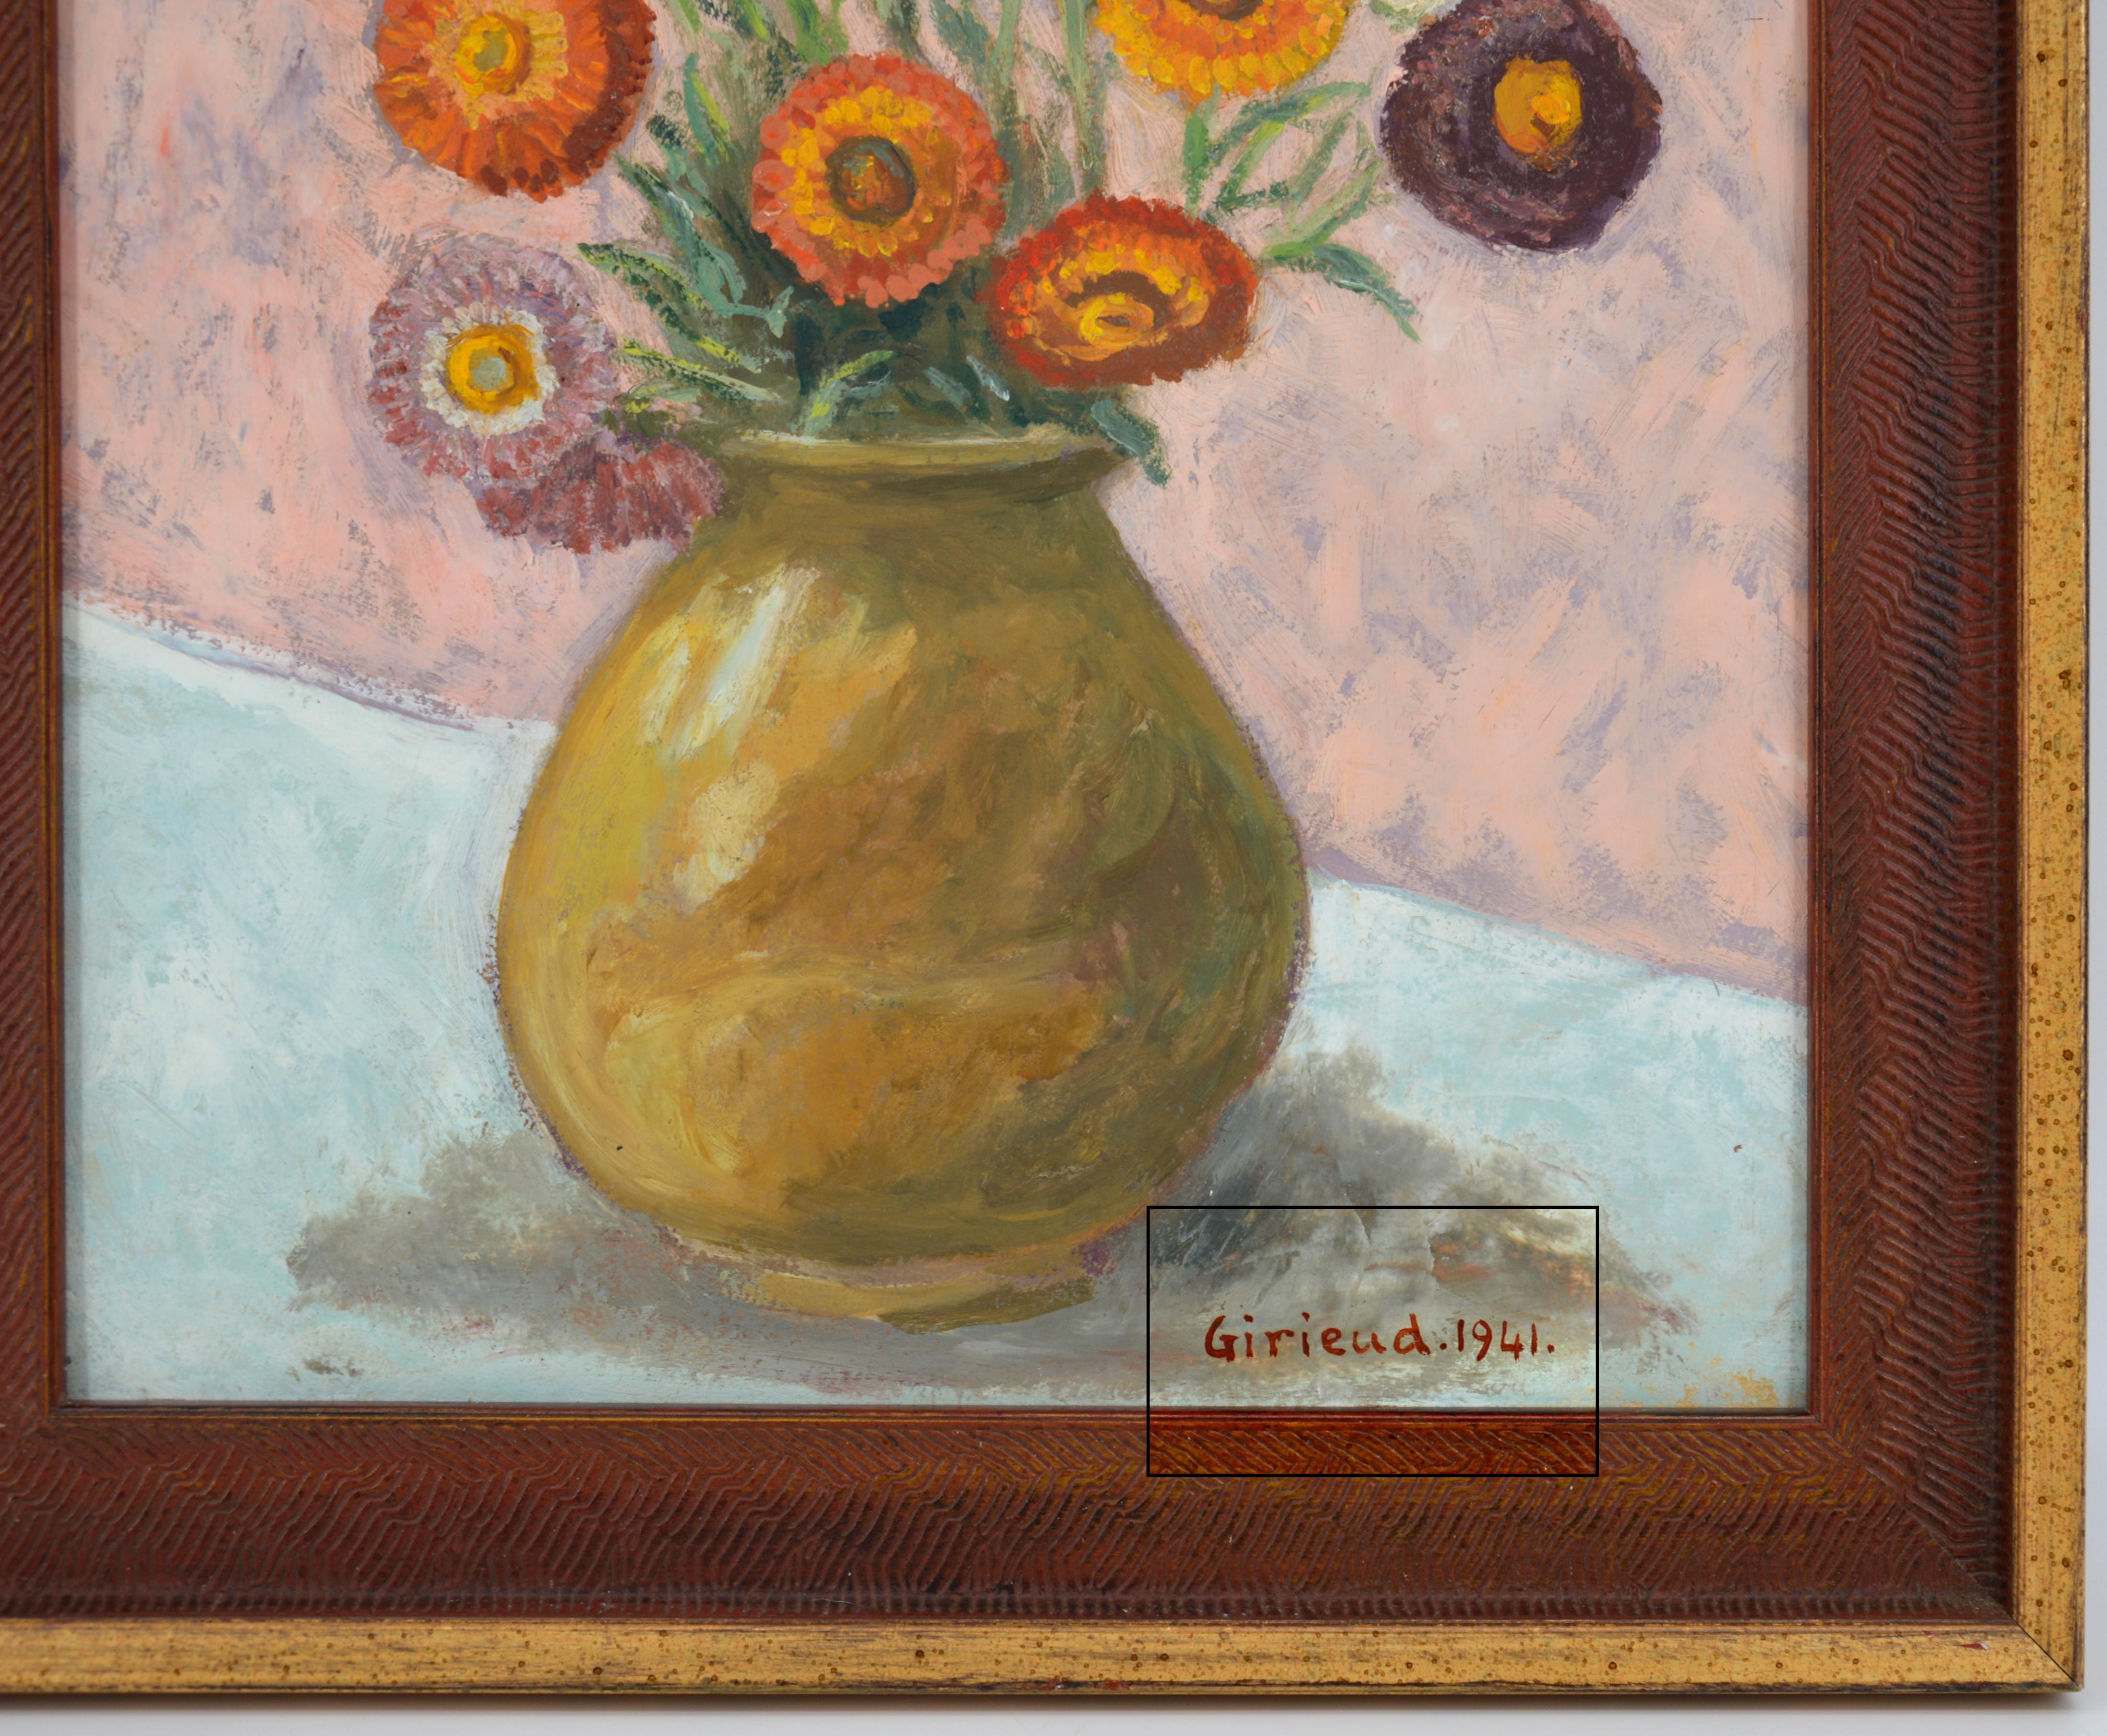 Pierre GIRIEUD, Vase of Flowers, Marigolds, Oil on Cardboard, 1941 - French School Painting by Pierre Girieud